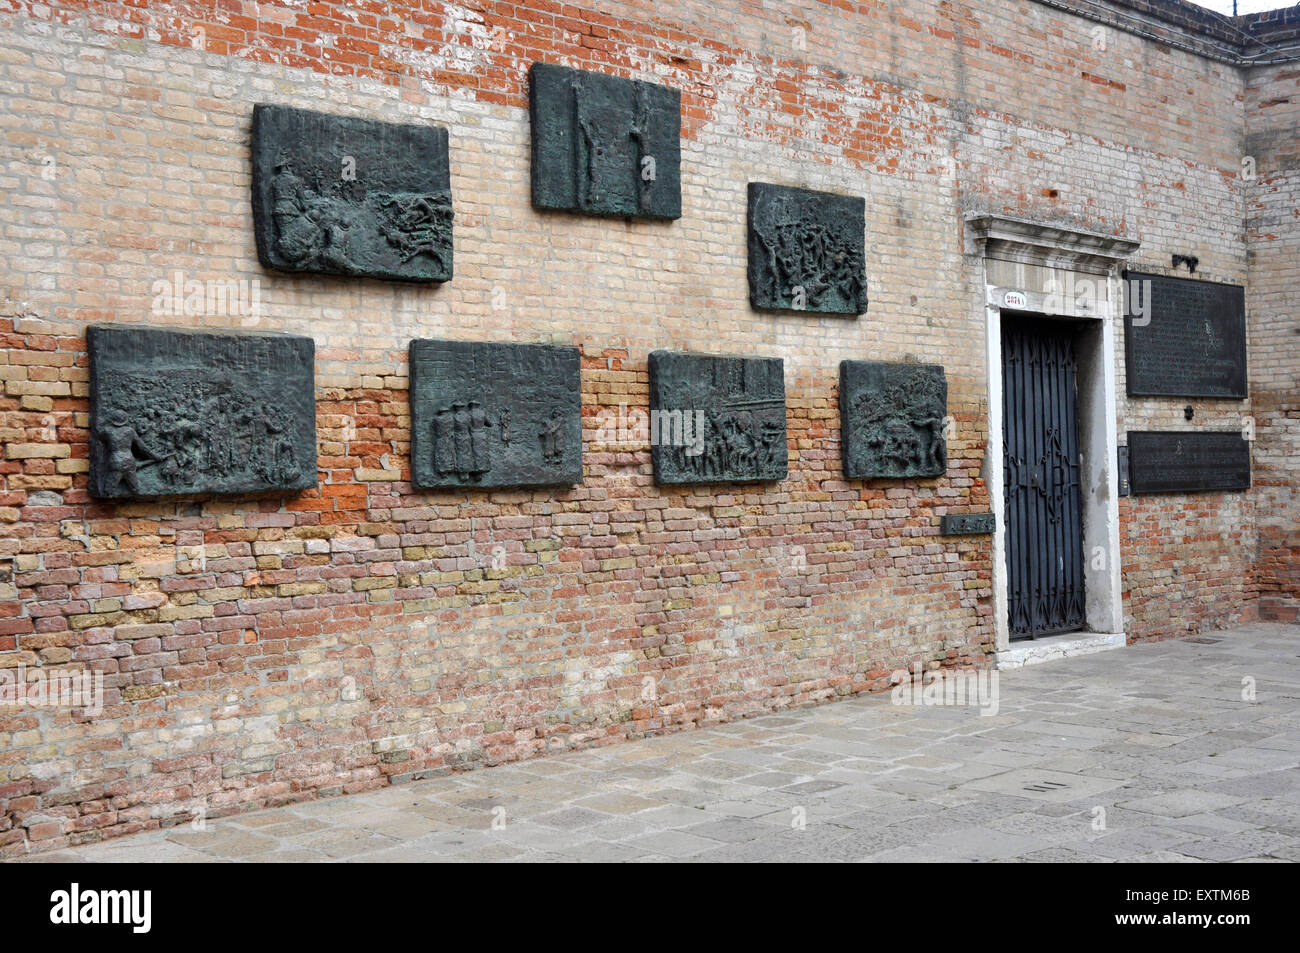 Italie - Venise - Cannagerio région - Campo dei -Ghetto mur sculpté de reliefs - monument aux morts juifs Vénitiens en holocauste. Banque D'Images